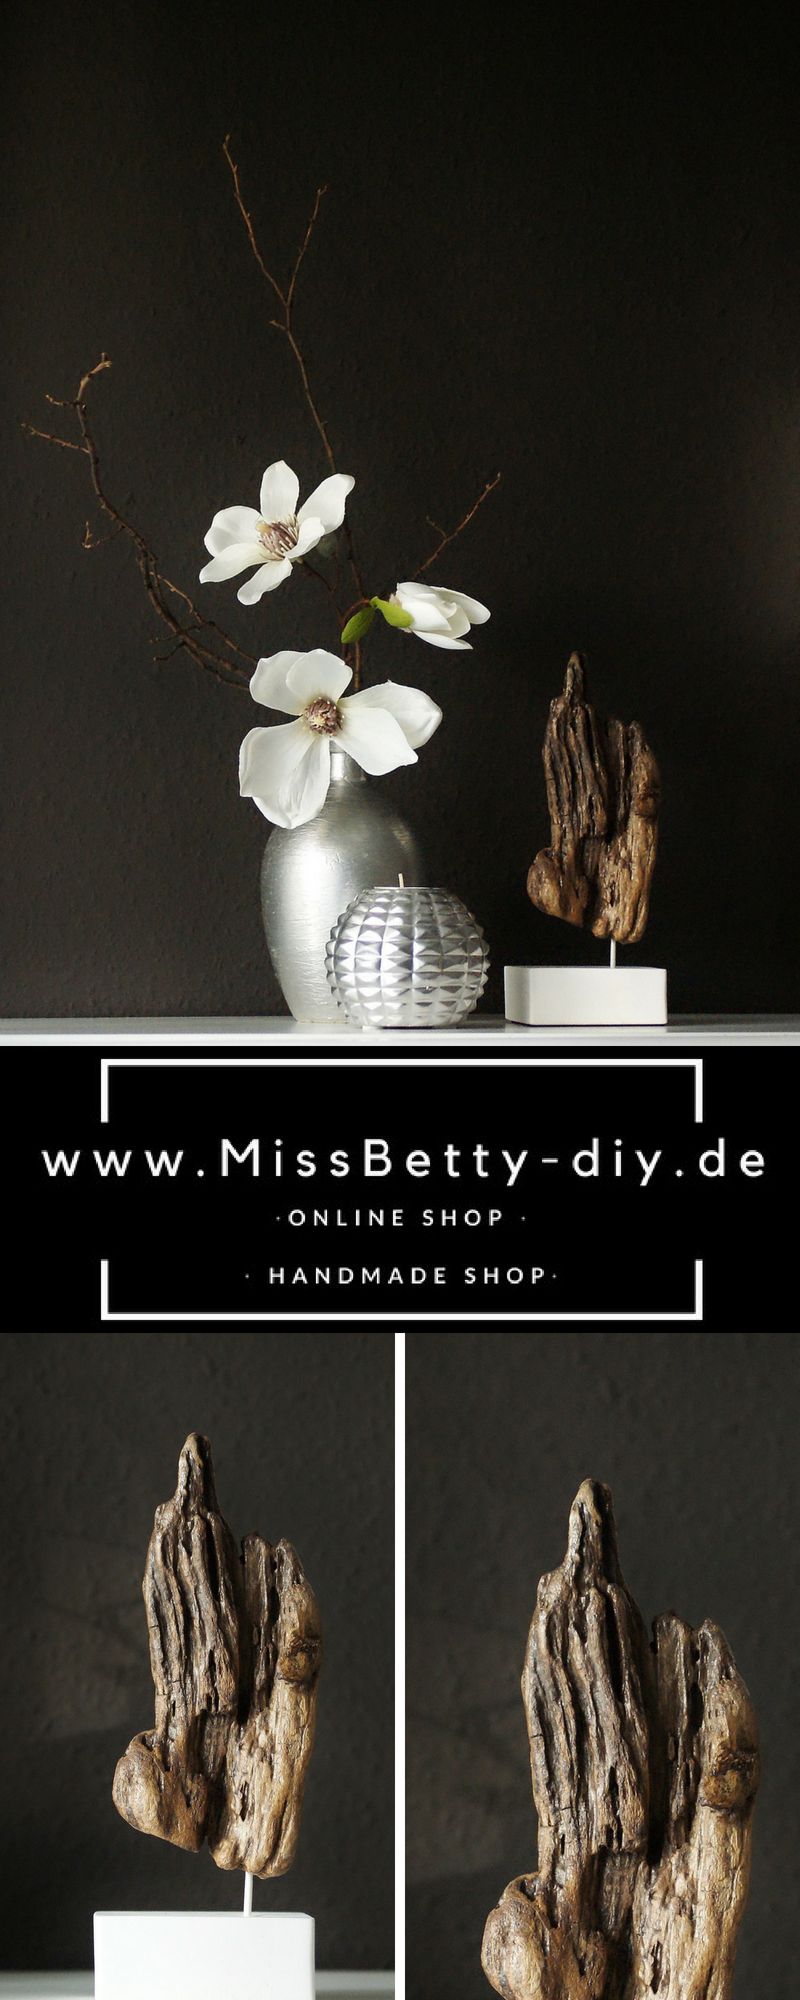 Online Deko Shop Best Of Shop the Look Deko Treibholz Skulptur Auf Einem Weißen